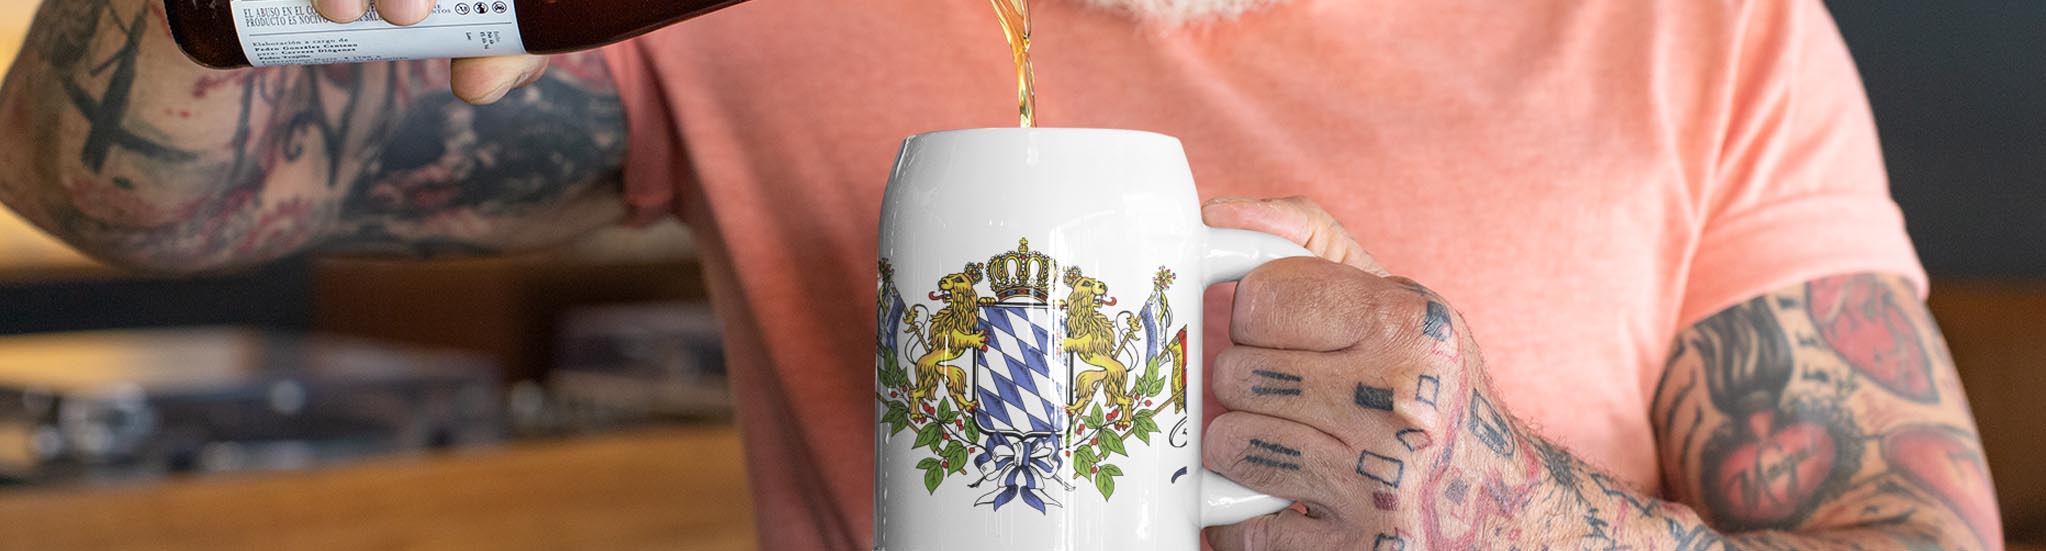 Bayerische Geschenke in unserem Bayern Shop